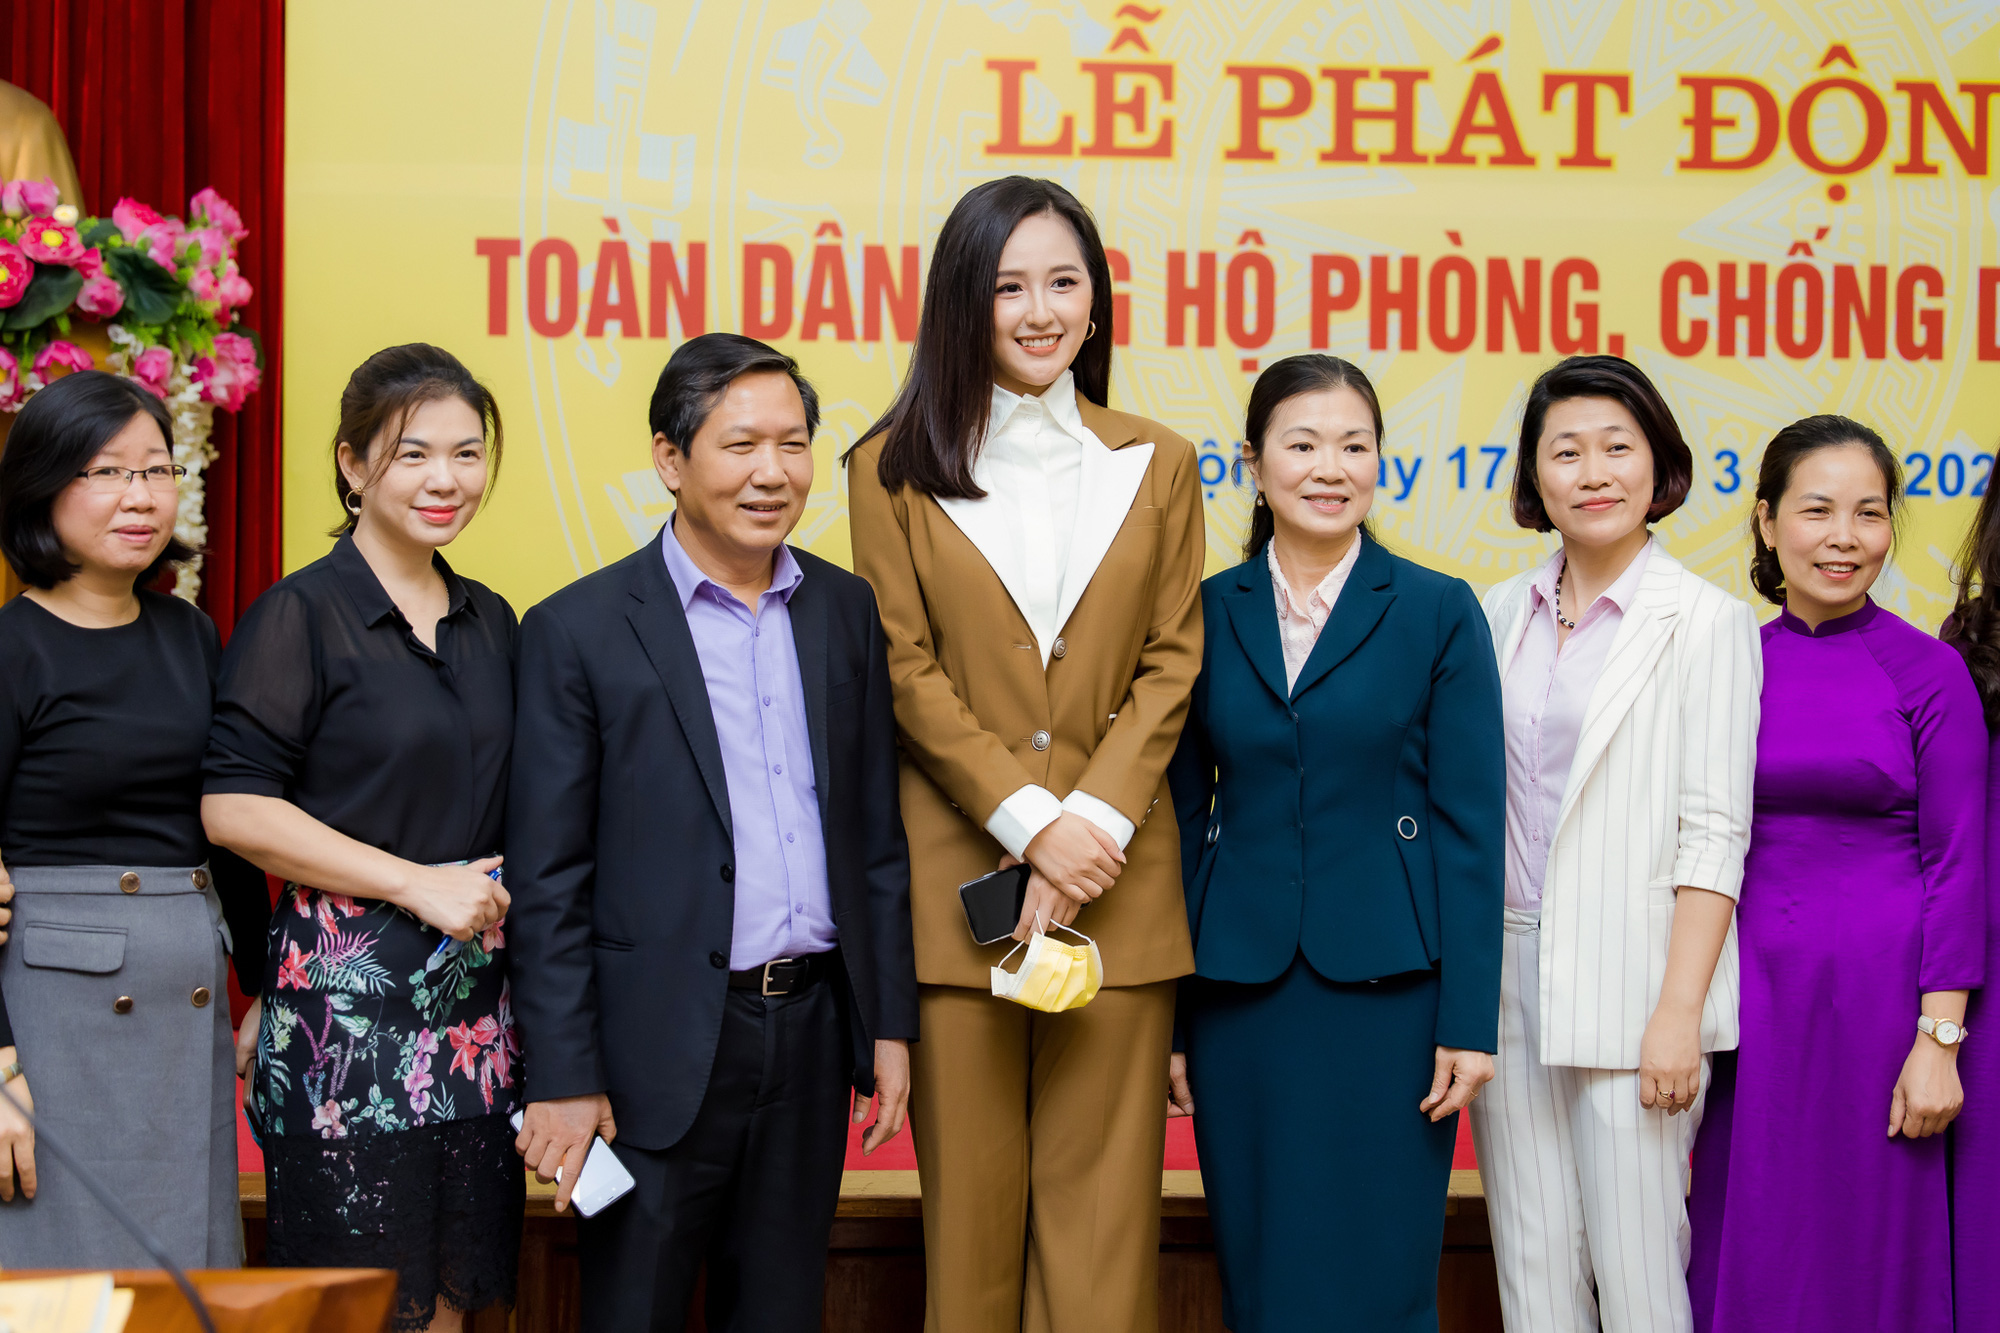 Hoa hậu Mai Phương Thuý gặp Thủ tướng Chính phủ, đại diện ủng hộ 20 tỷ đồng phòng chống đại dịch Covid-19 - Ảnh 9.